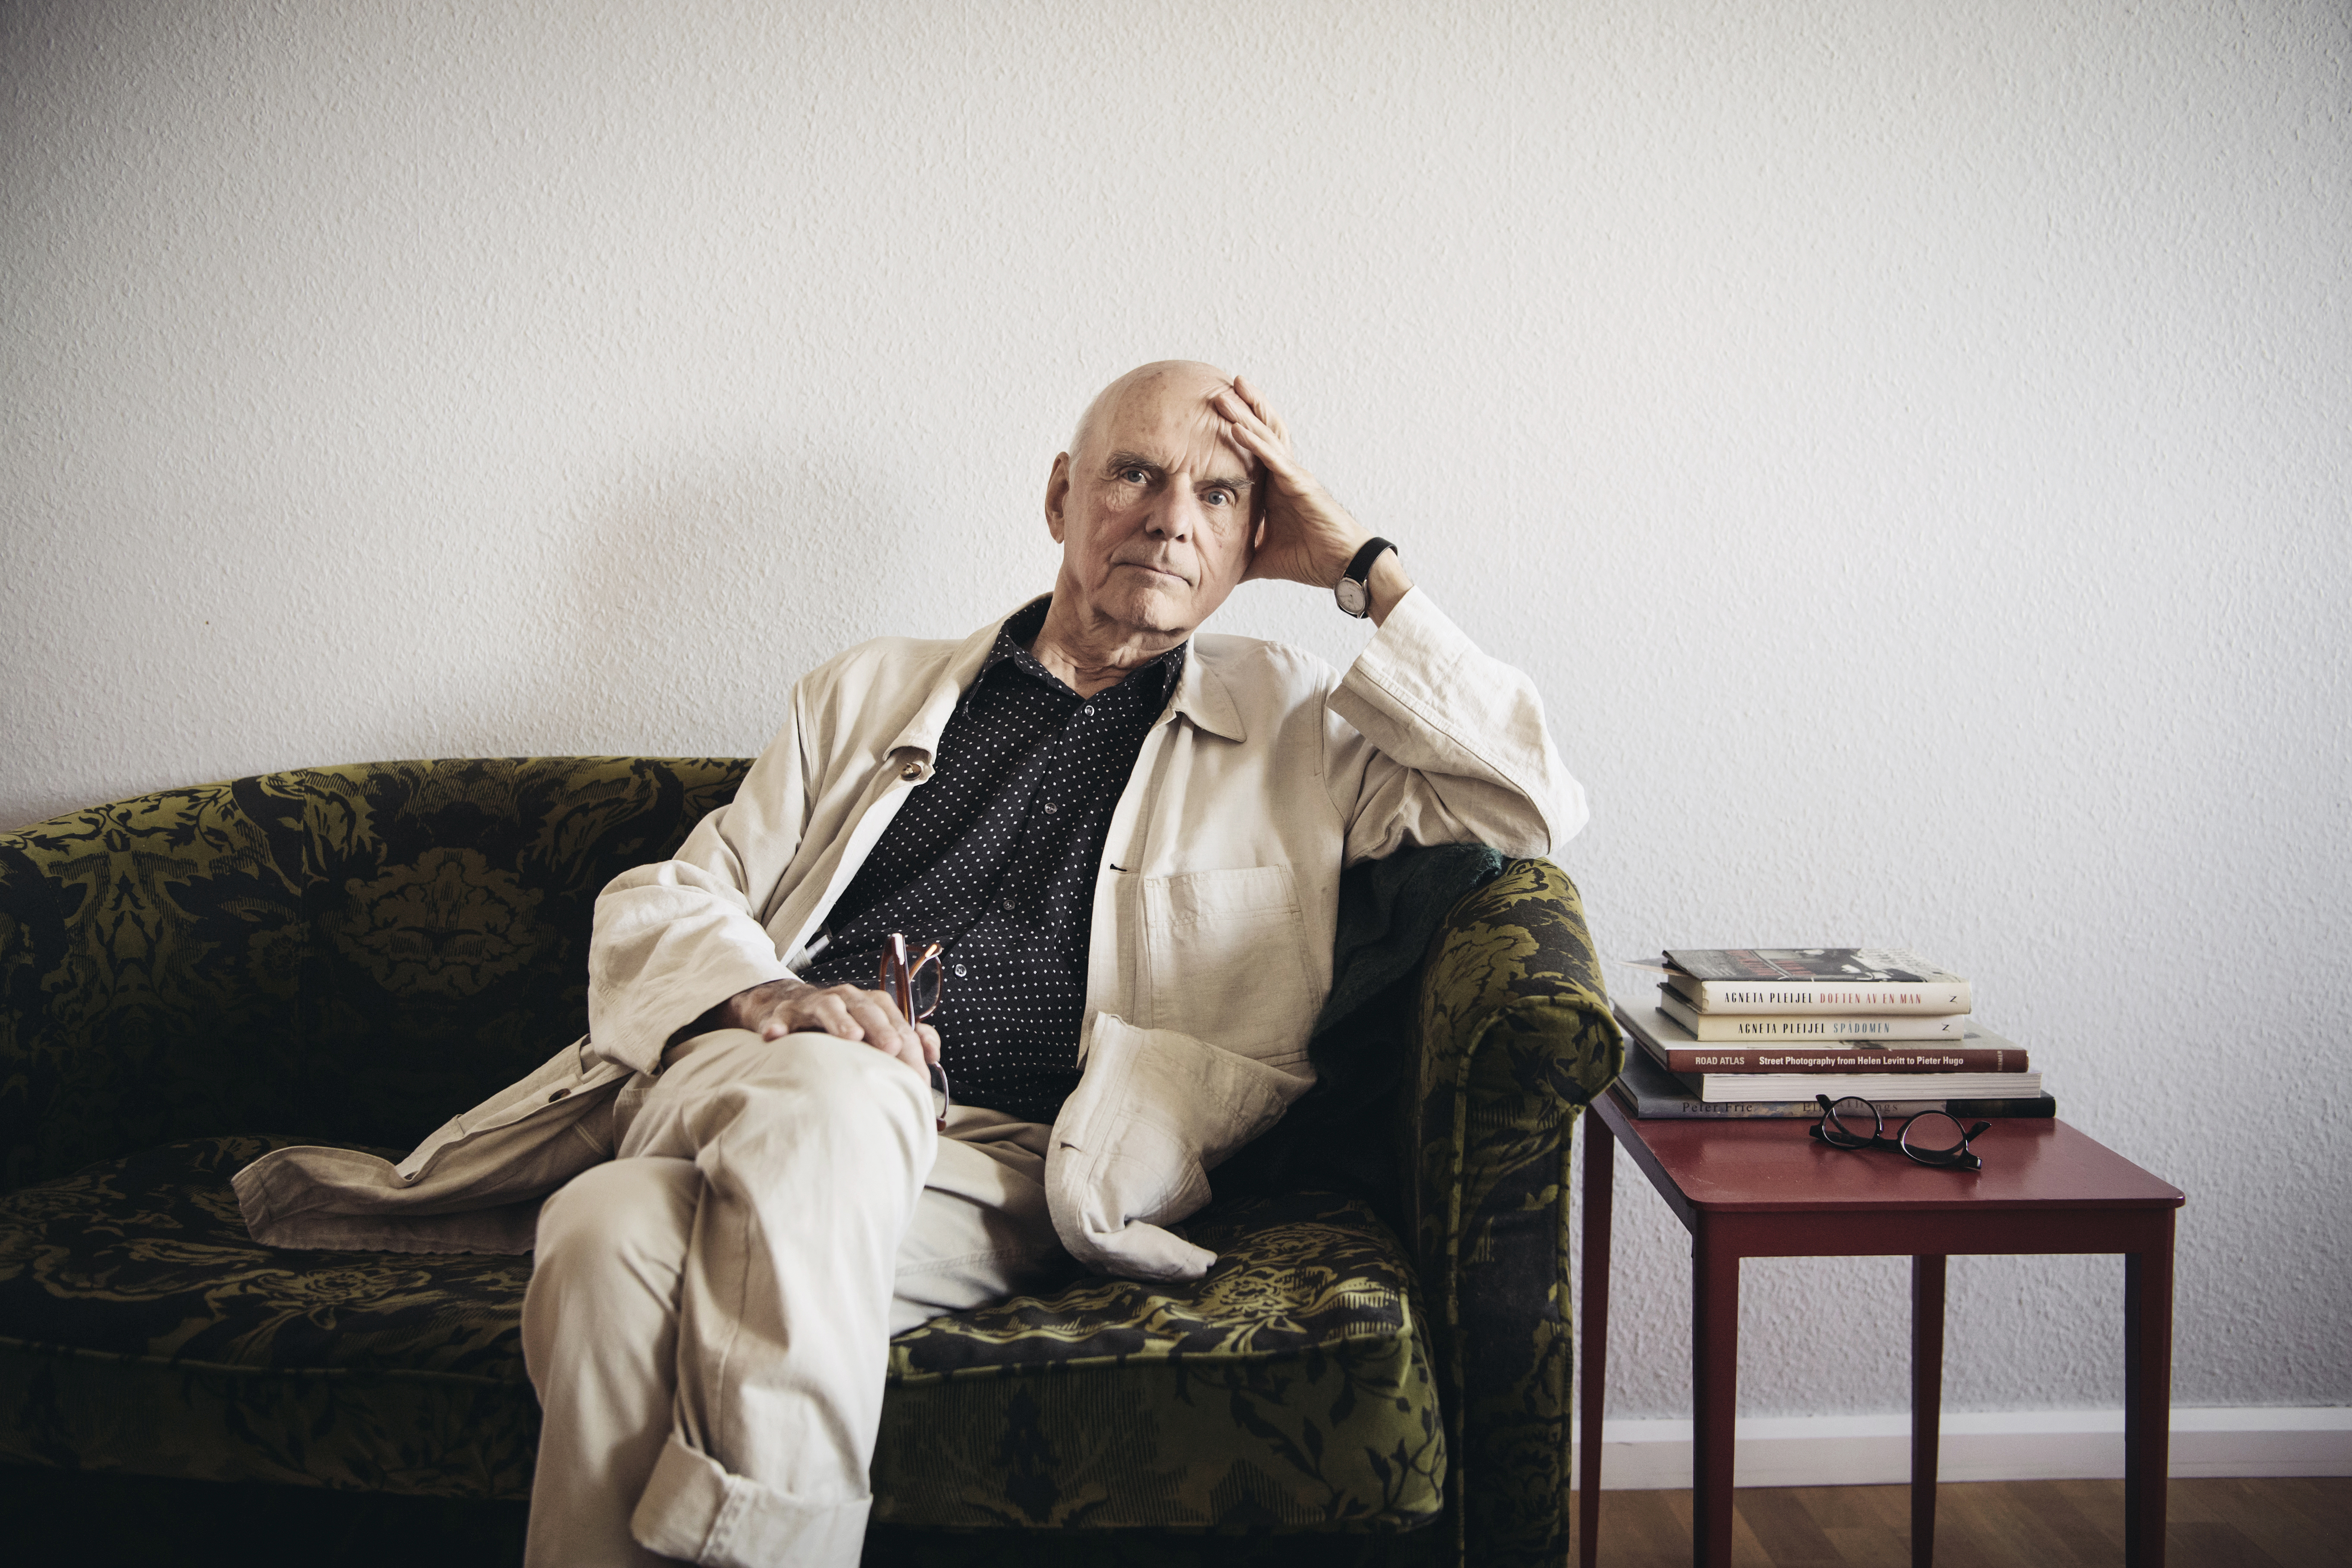 Skådespelaren och regissören Lennart Hjulström har avlidit vid 83 års ålder. Arkivbild: Erik Simander/TT
